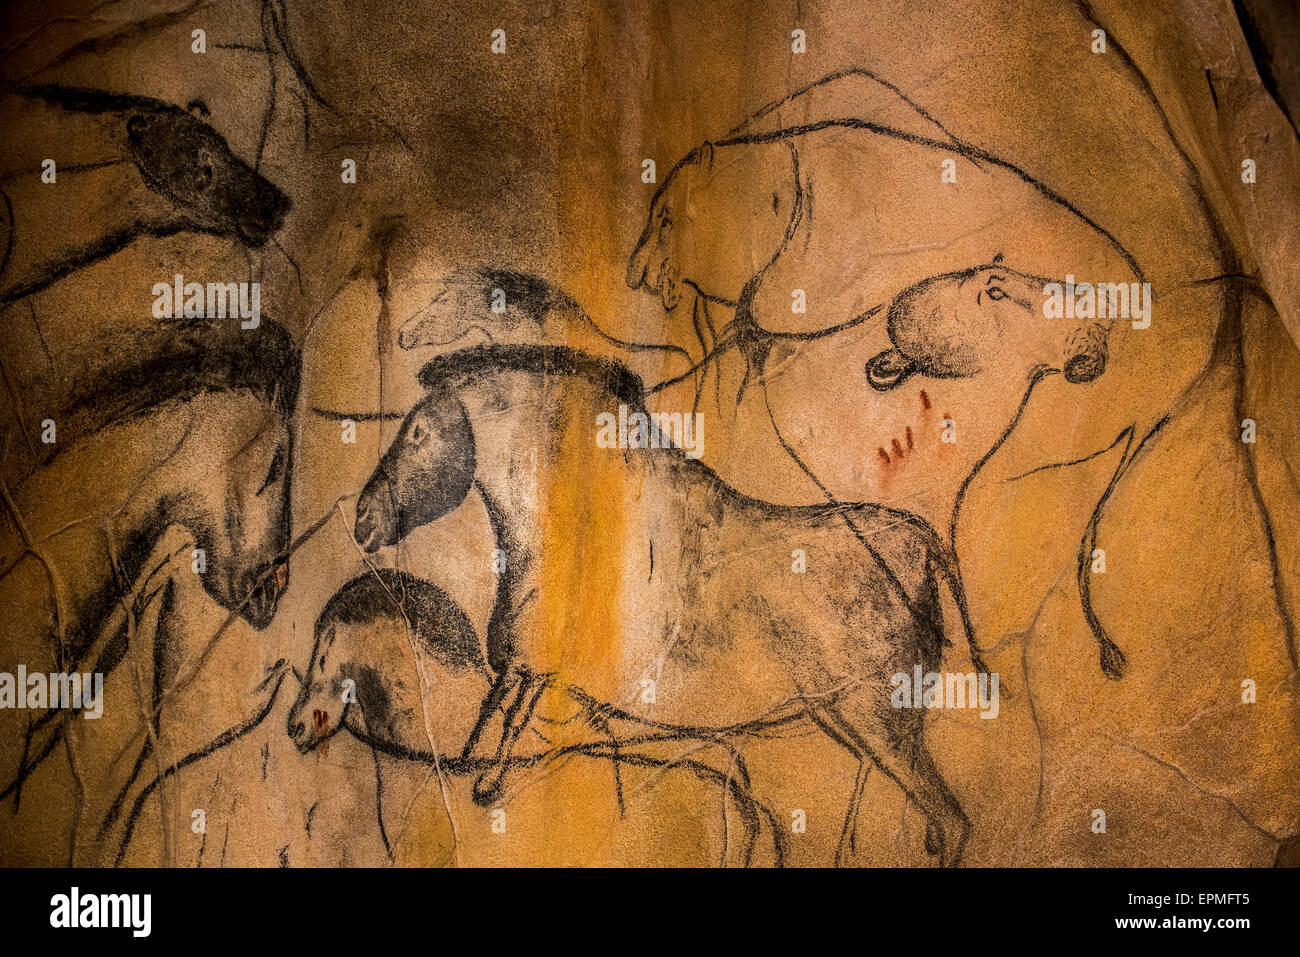 Réplique de peintures rupestres préhistoriques de la grotte Chauvet, Ardèche, France, montrant des chevaux sauvages disparues et lions grotte Banque D'Images